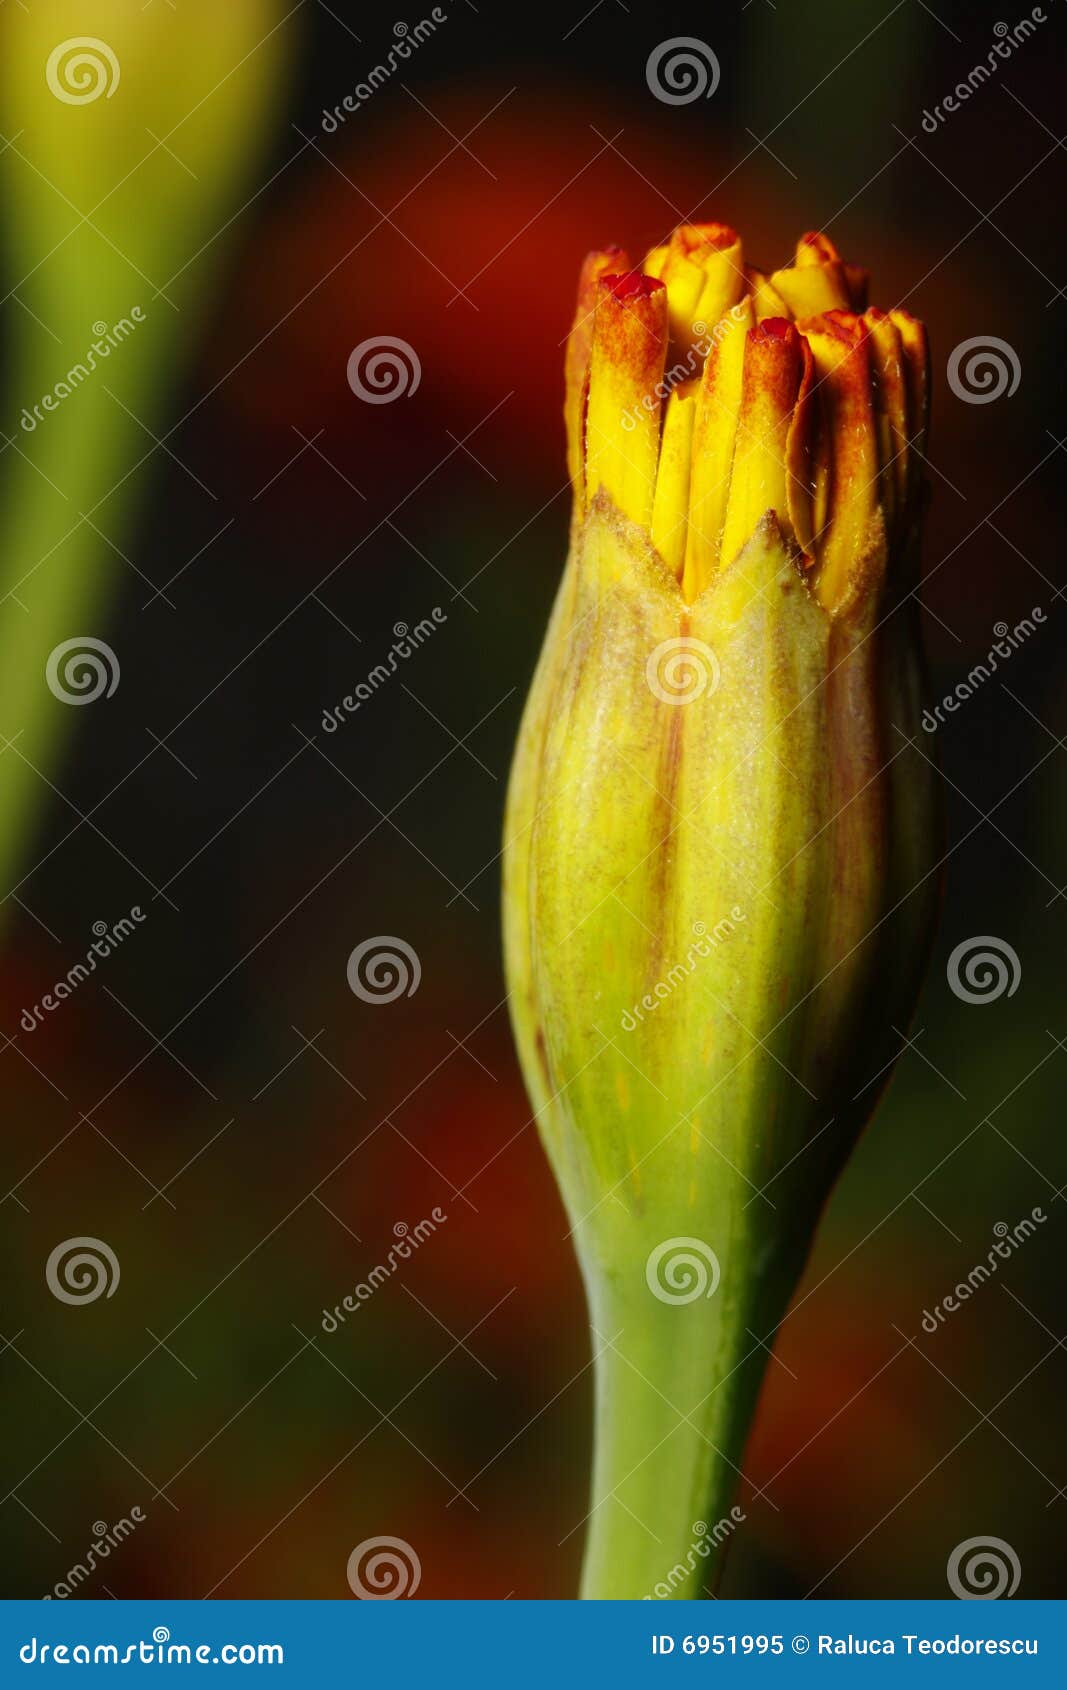 Orange Flower Over Blurred Background Stock Image - Image of botanical ...